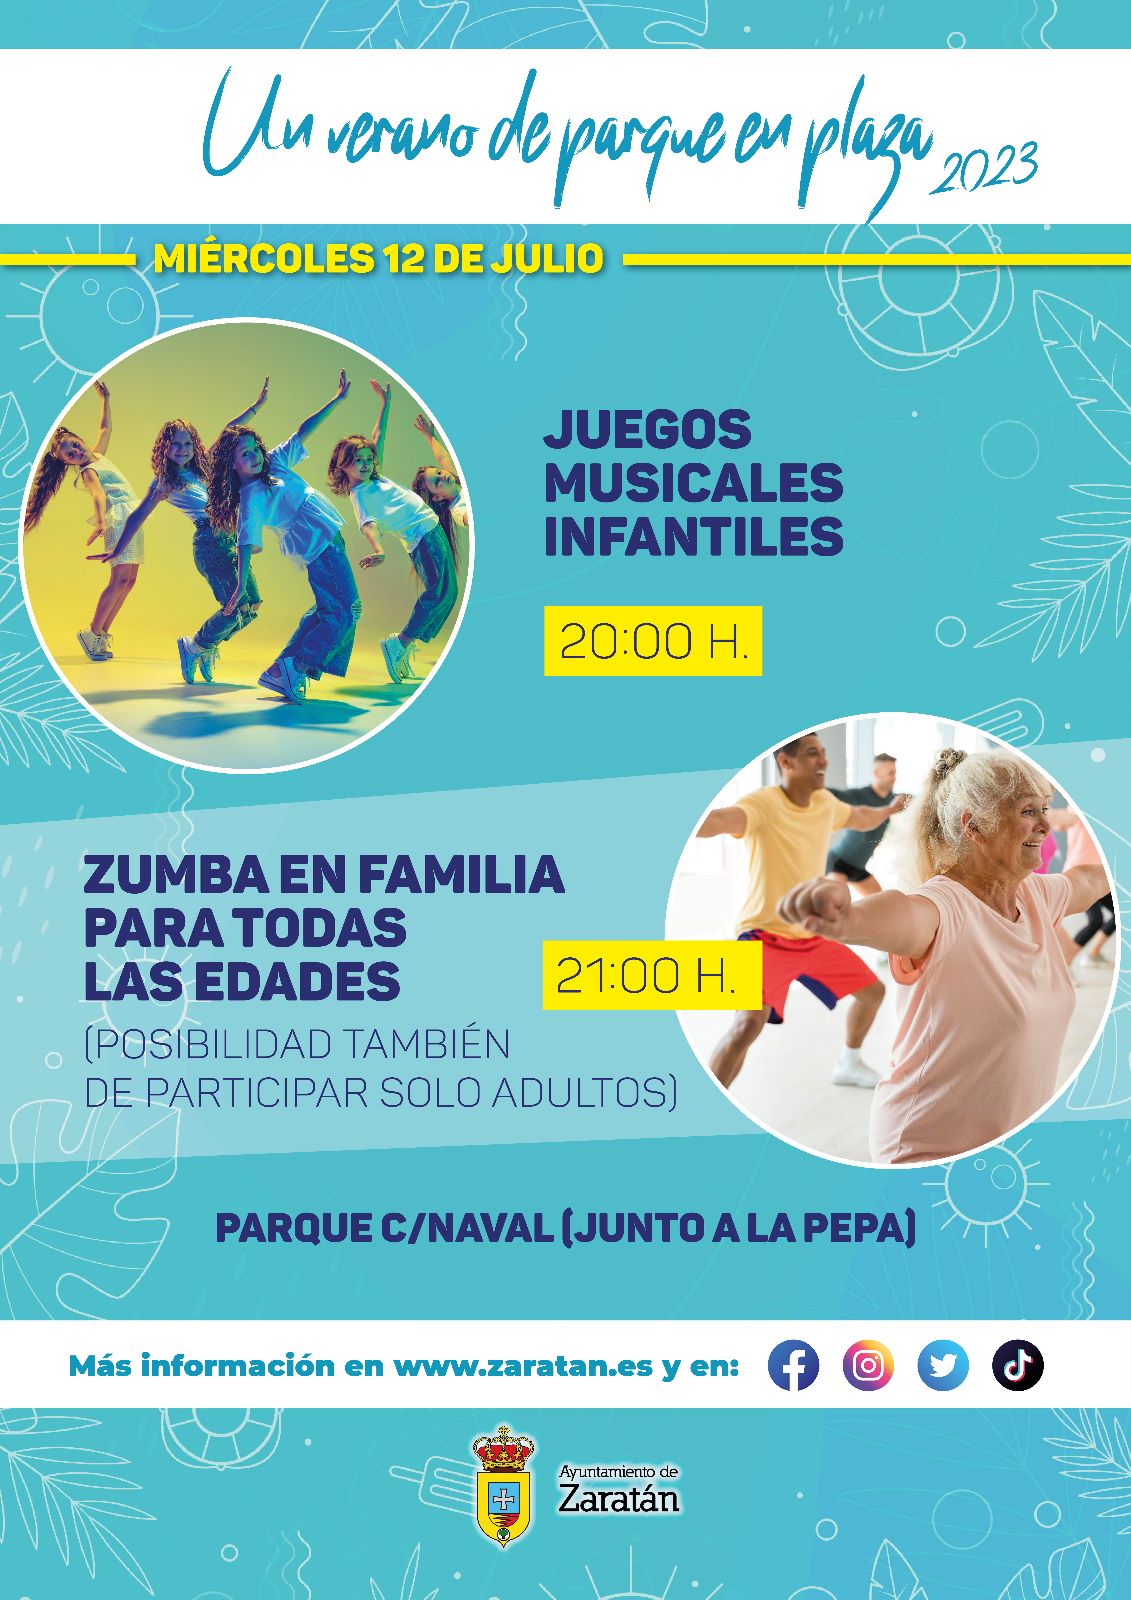 Juegos Musicales De Parque En Plaza 12 julio